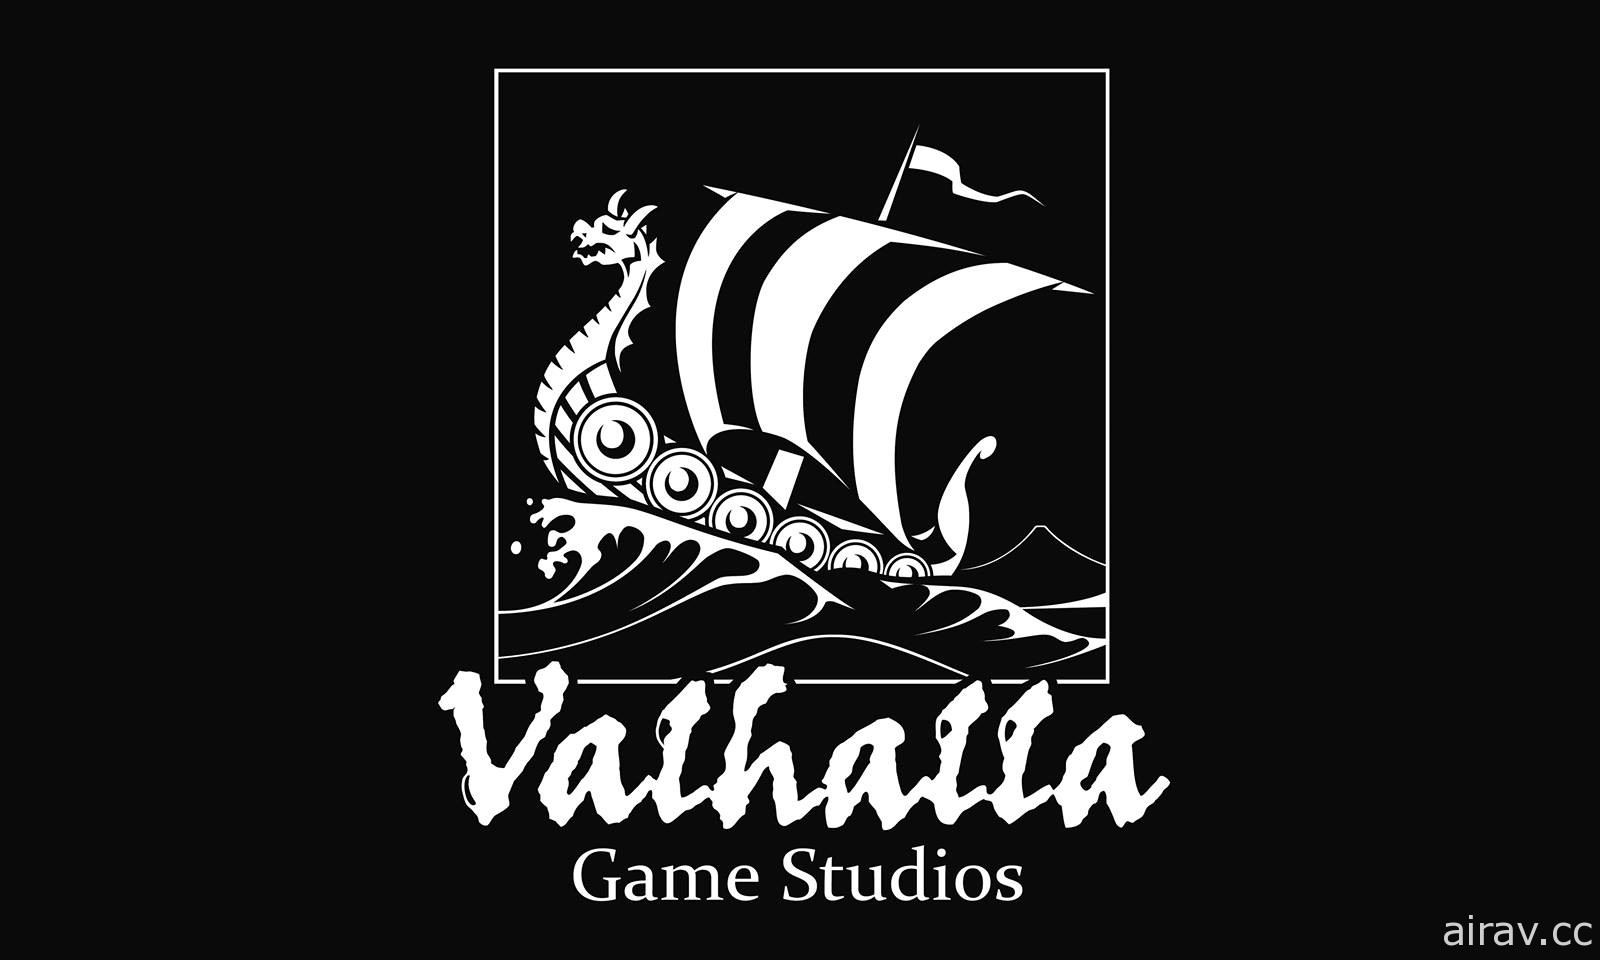 《惡魔三人組》開發工作室 Valhalla Game Studios 已於日前解散 由原子公司 Soleil 吸收